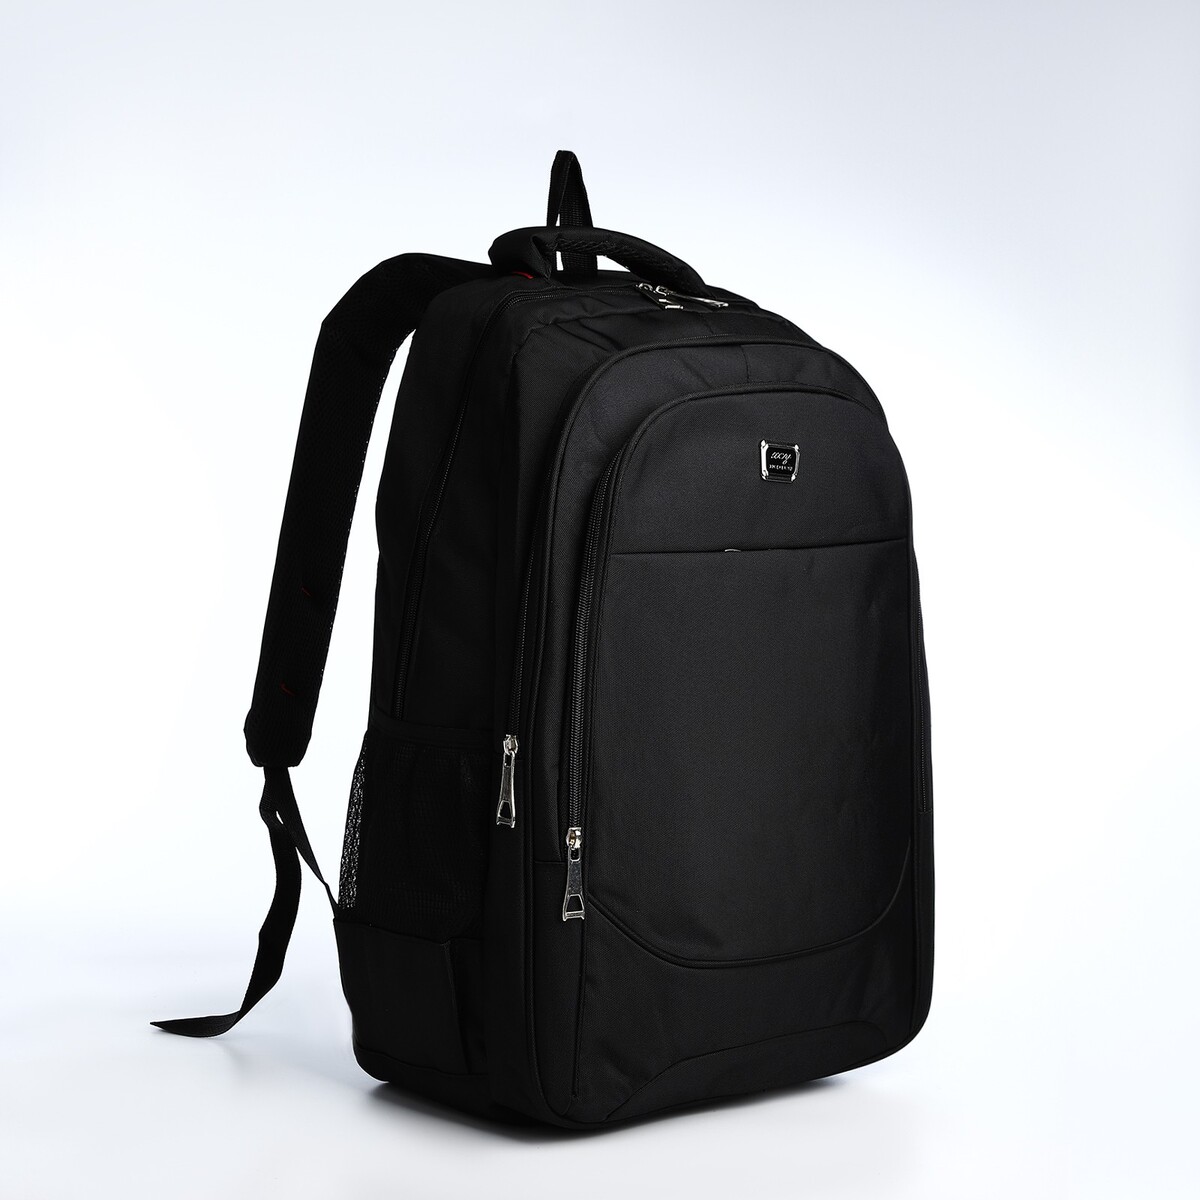 Рюкзак молодежный из текстиля, 2 отдела на молнии, 4 кармана, цвет черный